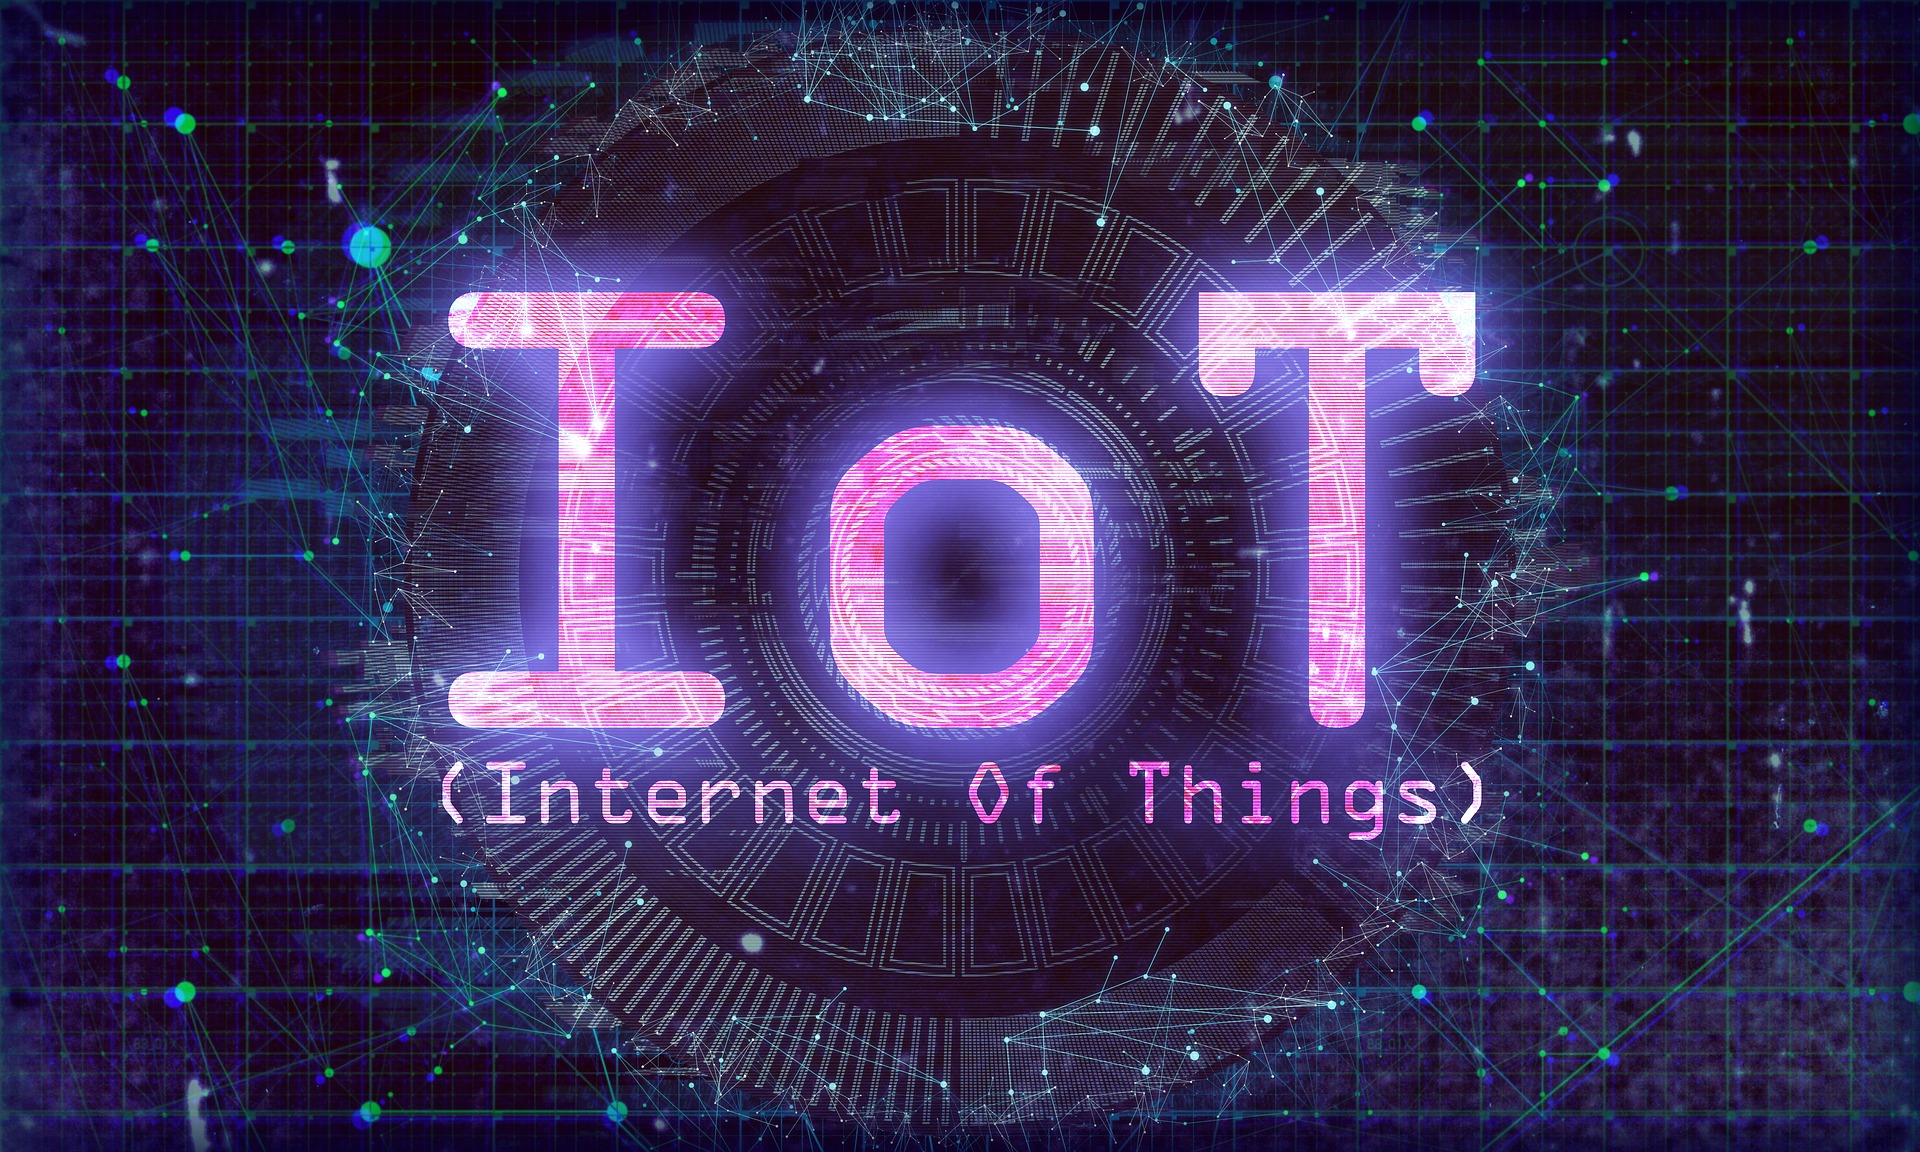 La imagen muestra las siglas IoT y su significado sobre un fondo azul con una trama.